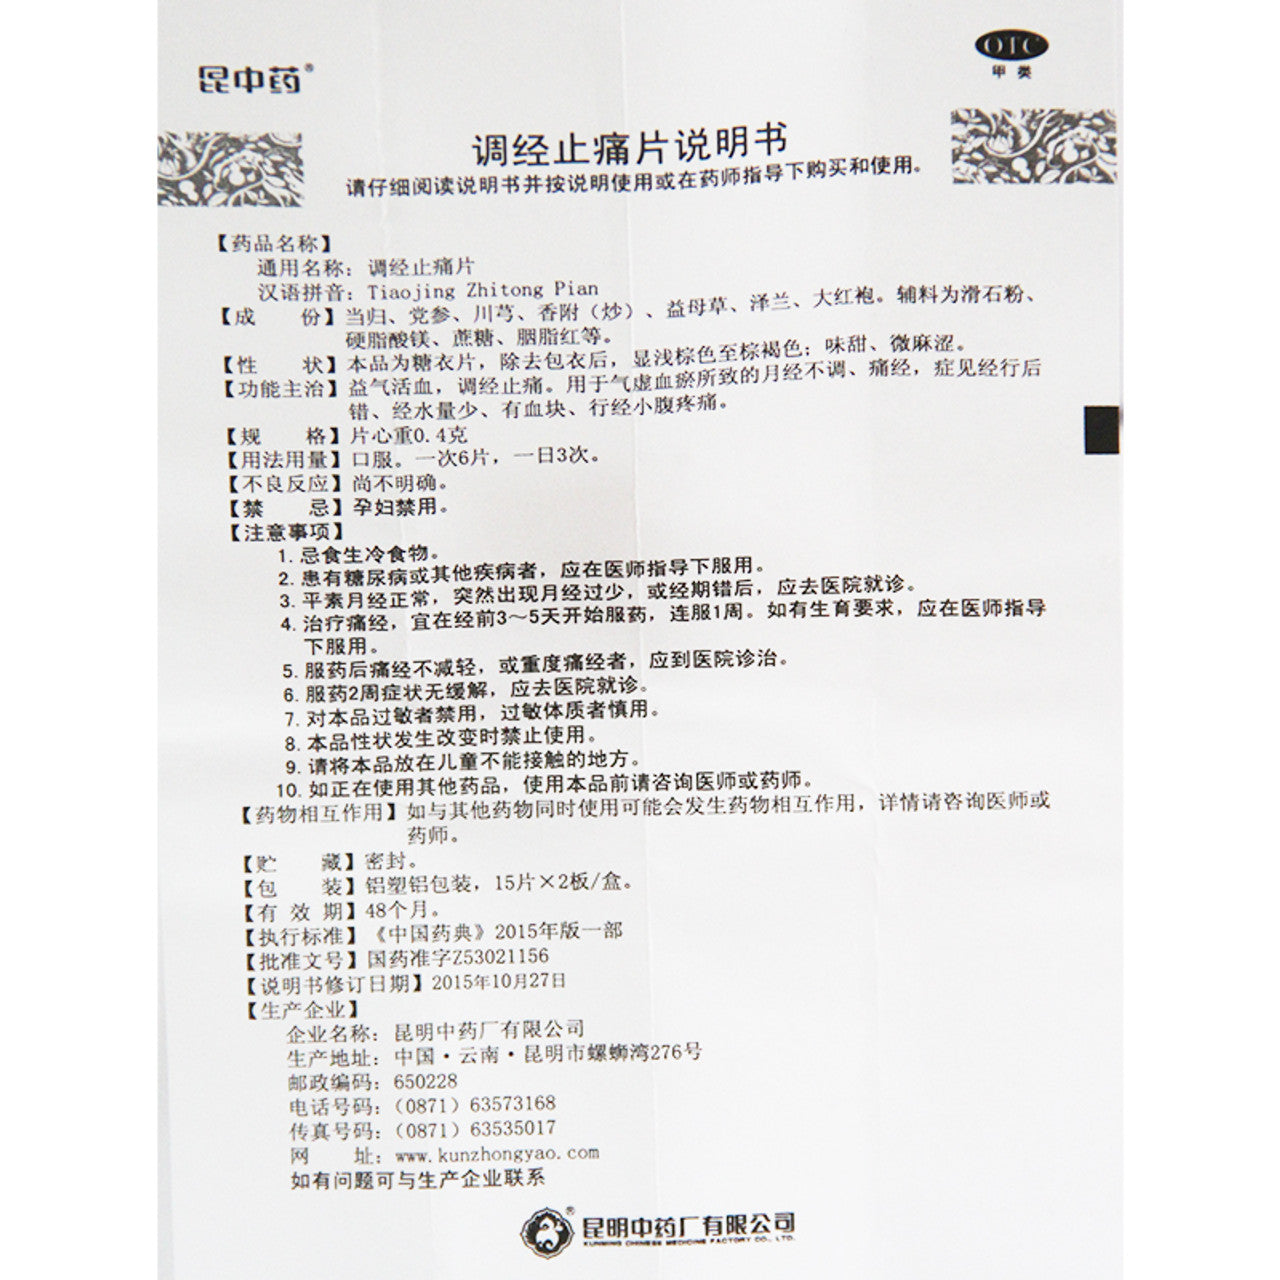 China Herb. Tiaojing Zhitong Pian / Tiaojing Zhitong Tablets / Tiao Jing Zhi Tong Pian / Tiao Jing Zhi Tong Tablets